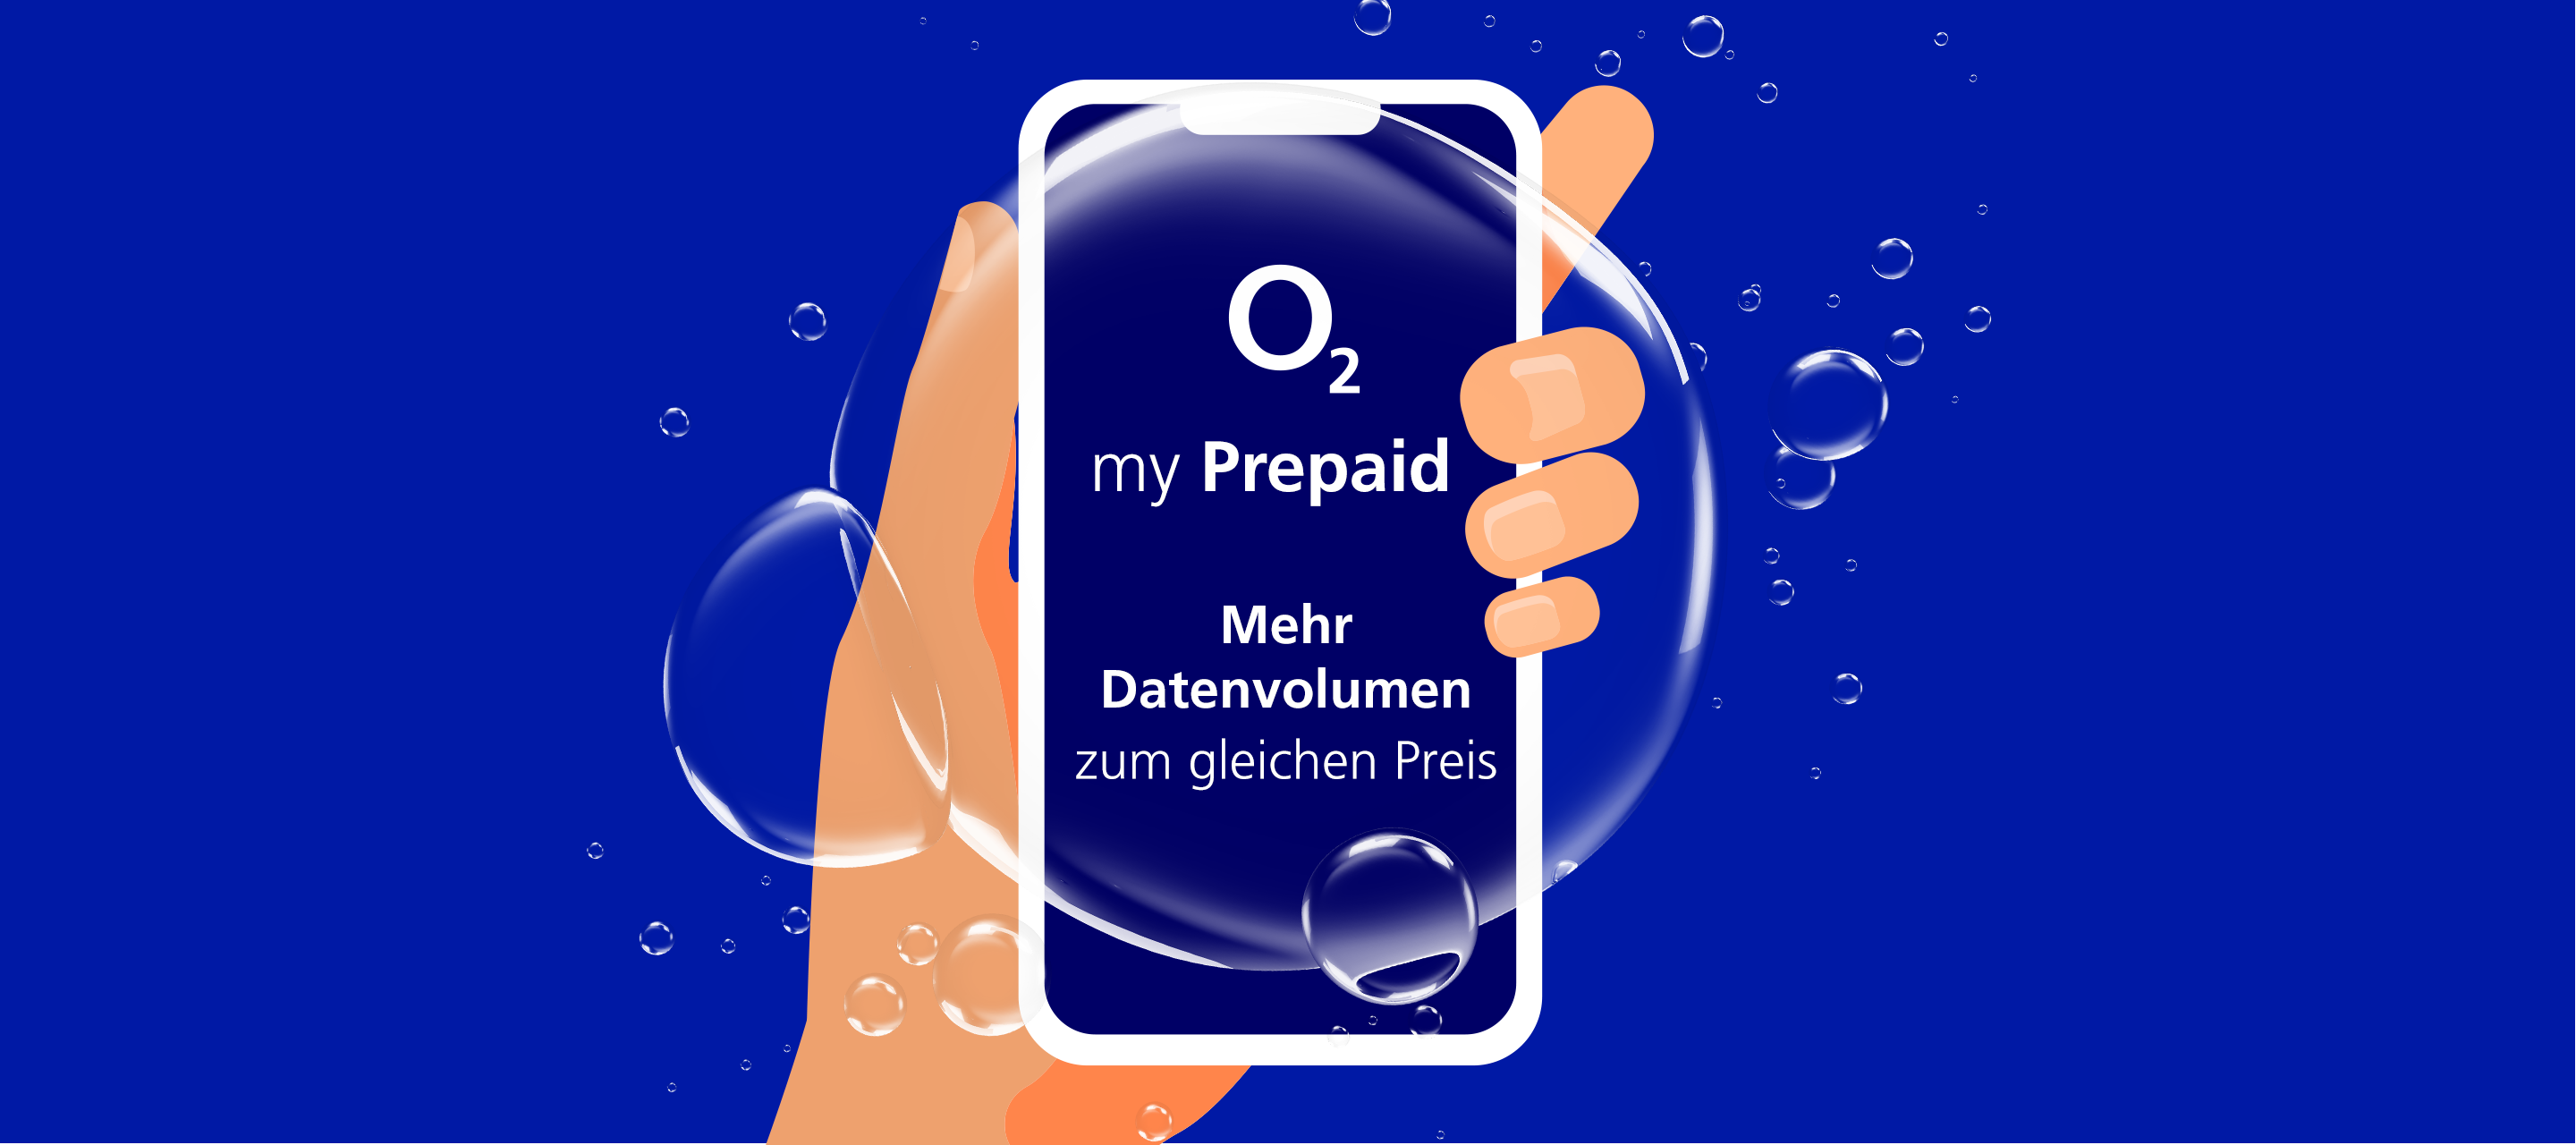 O₂ my Prepaid: Mehr Datenvolumen zum gleichen Preis